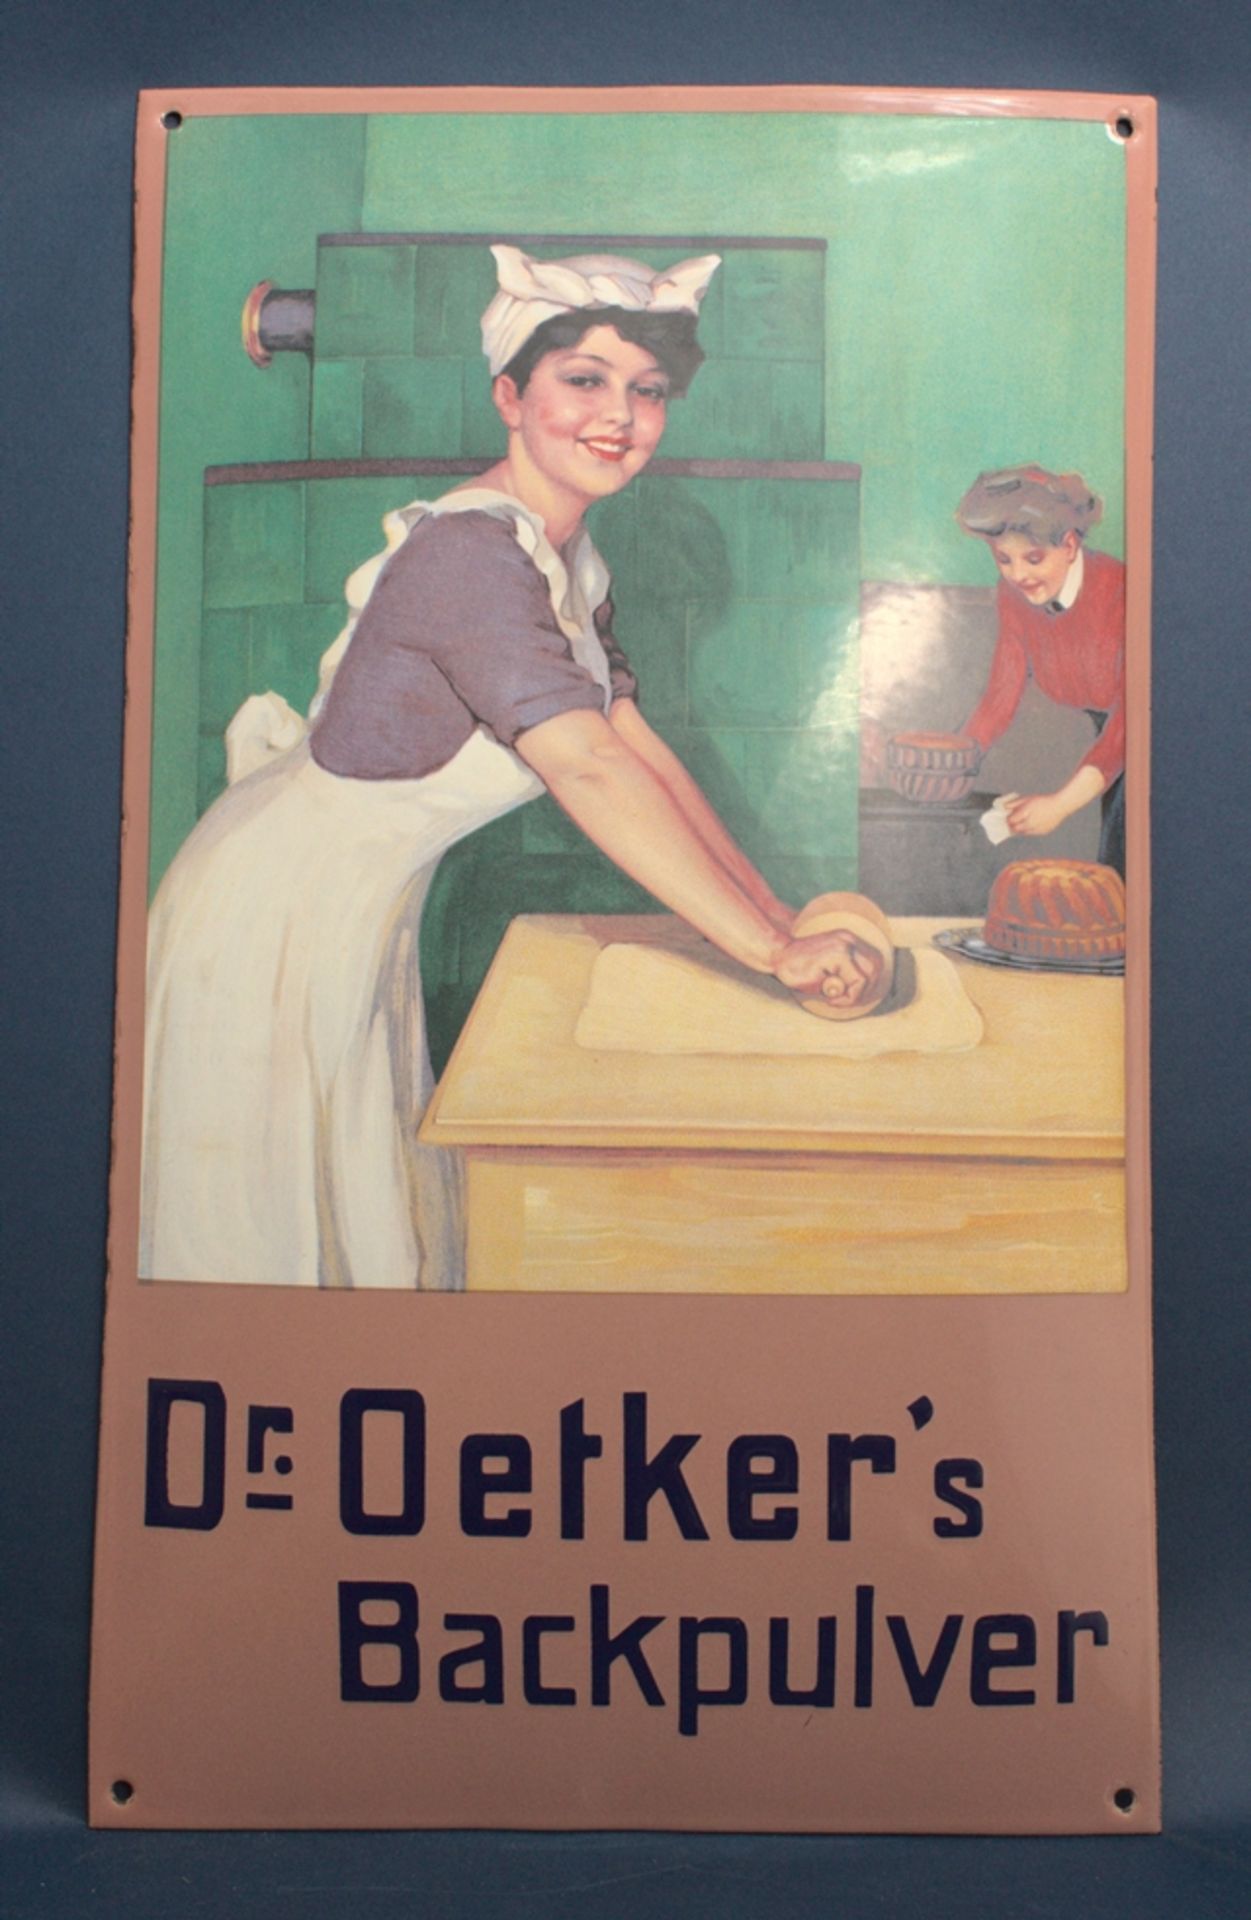 "DR. OETKER'S BACKPULVER". Dekoratives, leicht gewölbtes Emailleschild, ca. 50 x 30 cm, schöner